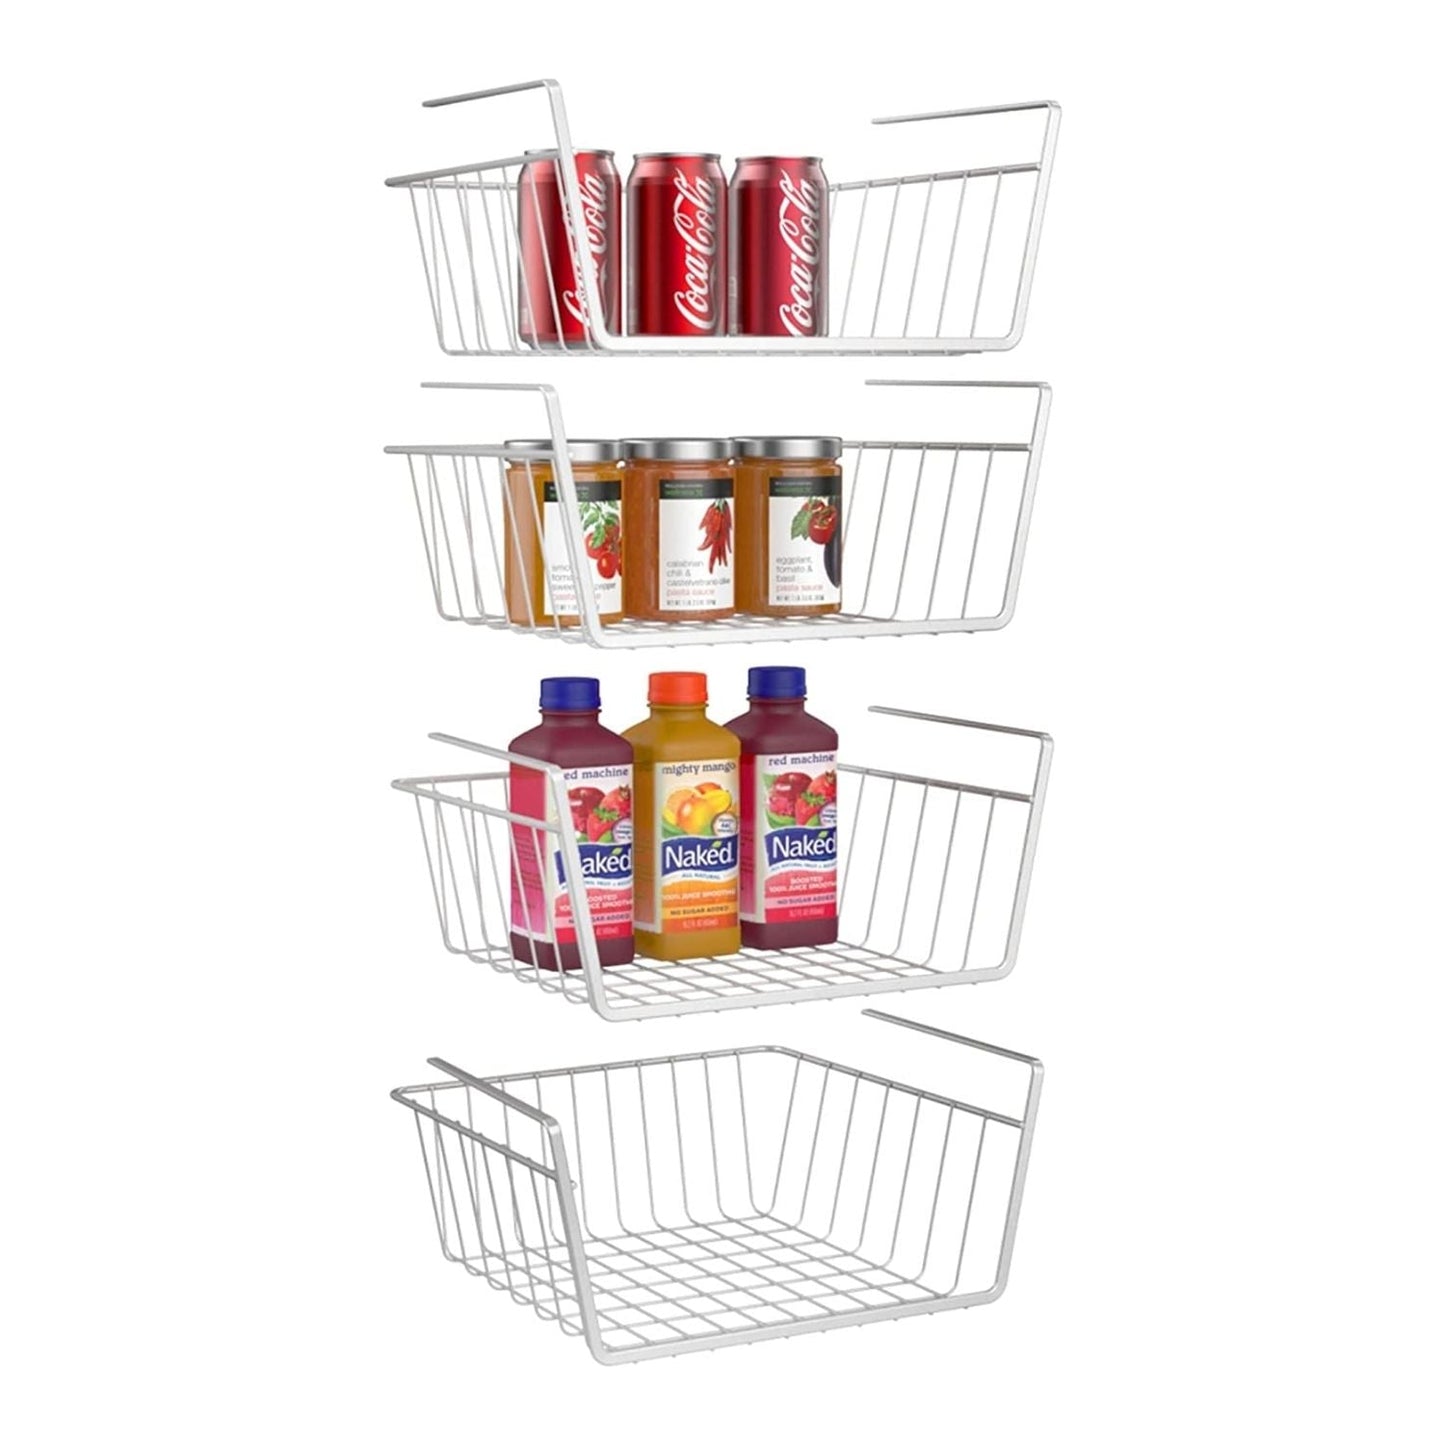 Oumilen Under Shelf Basket, Set of 4 Under Cabinet Basket Storage